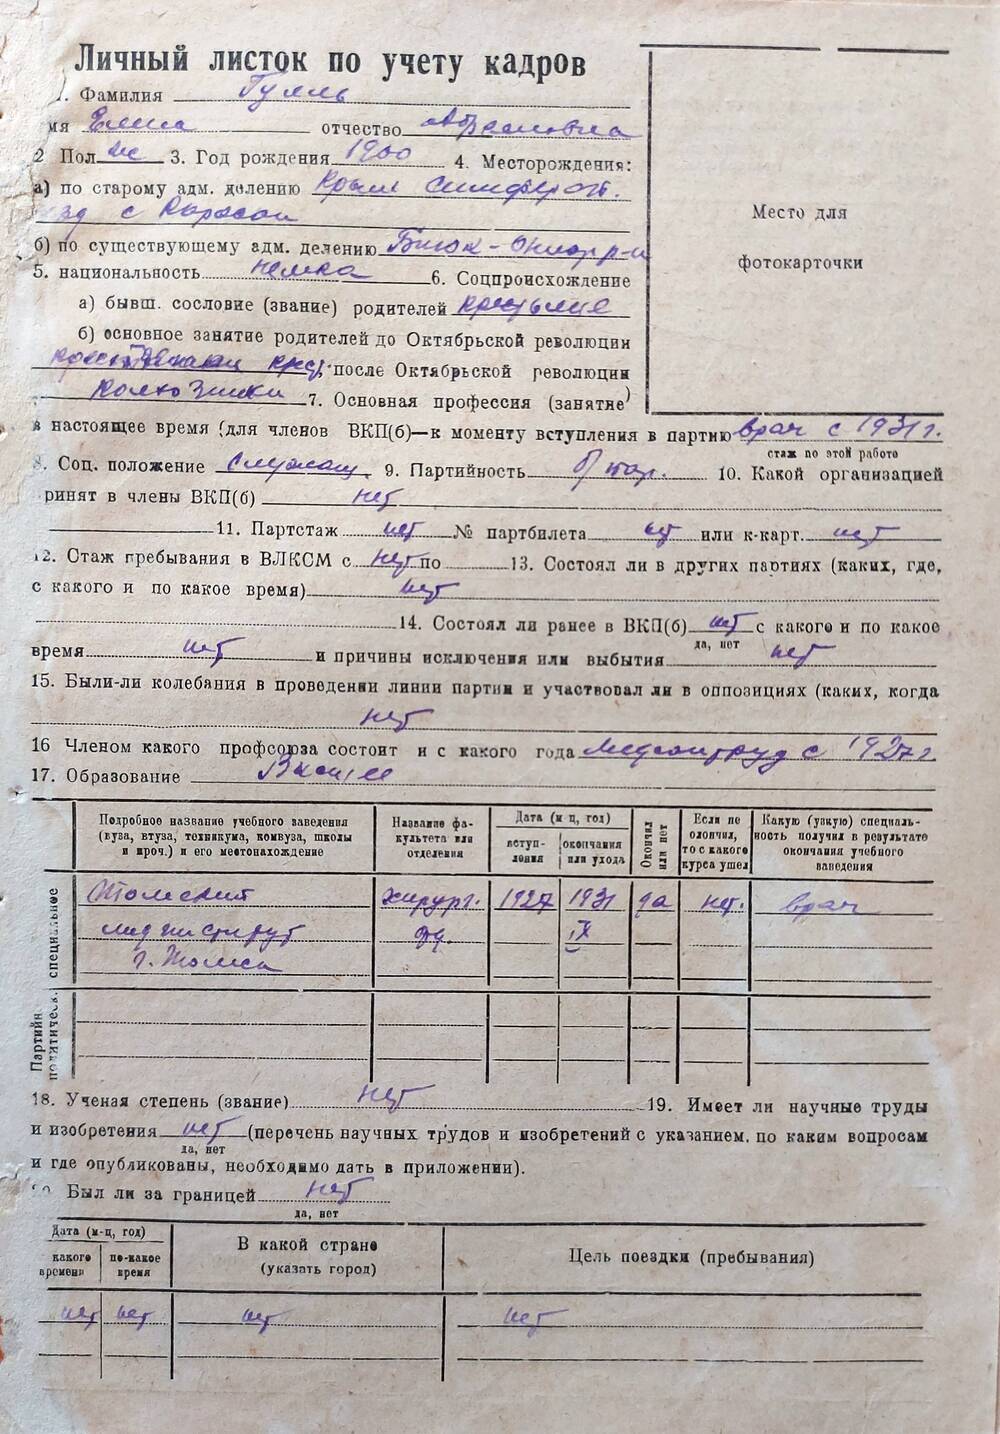 Листок по учету кадров Гулль Елены Абрамовны, 1900 года рождения, Заслуженного врача РСФСР, члена КПСС с 1957 года.